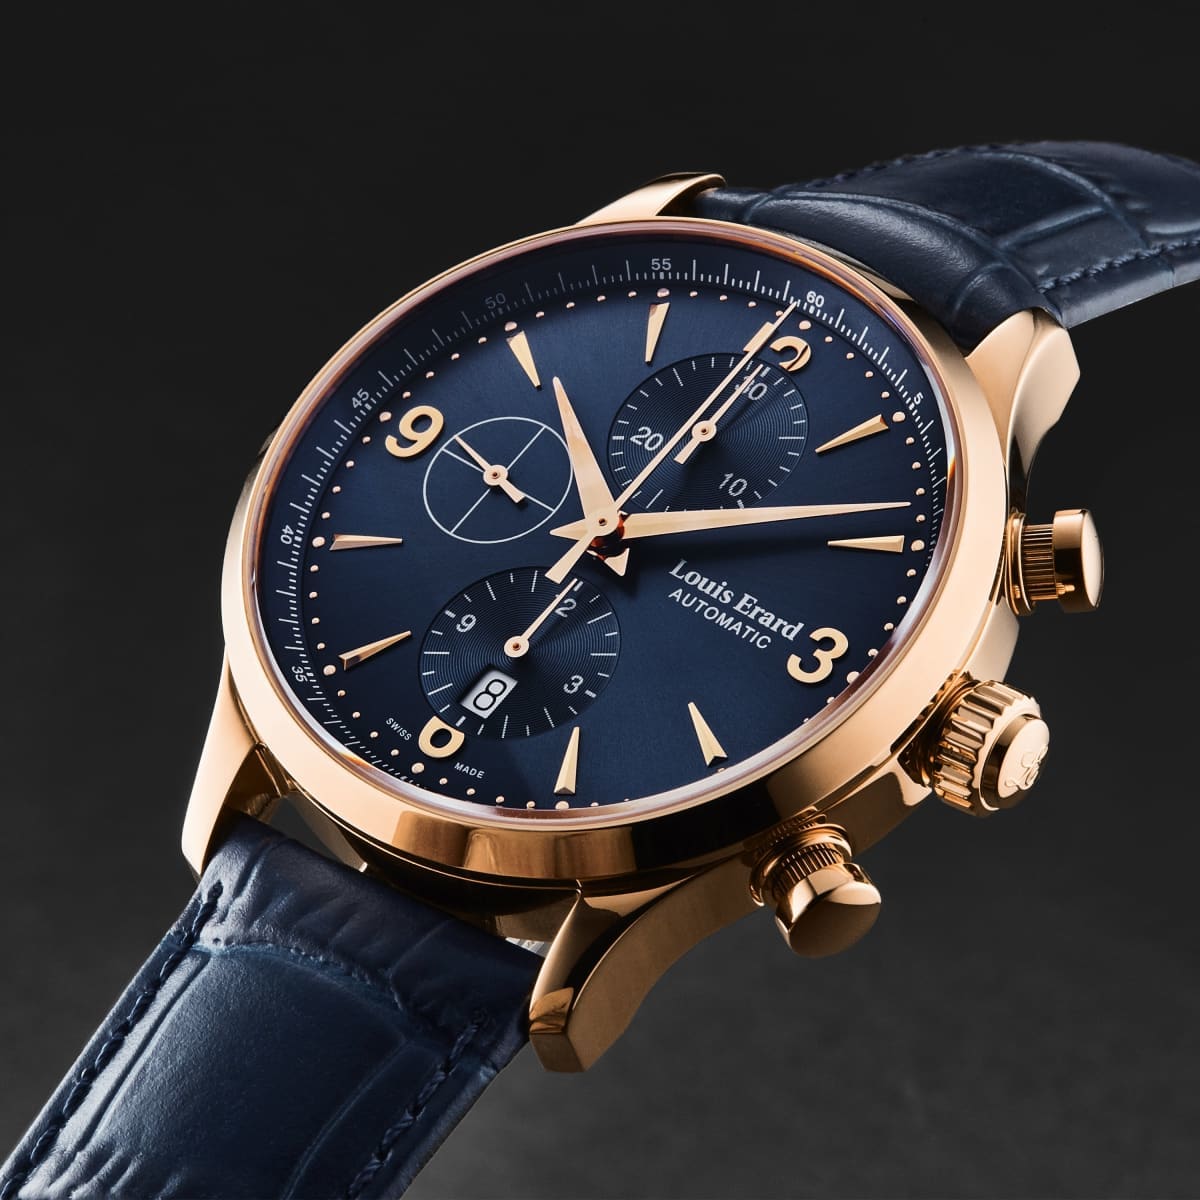 Louis Erard Men’s ’1931’ Chronograph Blue Dial Leather Strap Automatic Watch 78225PR15.BRC37 - On sale